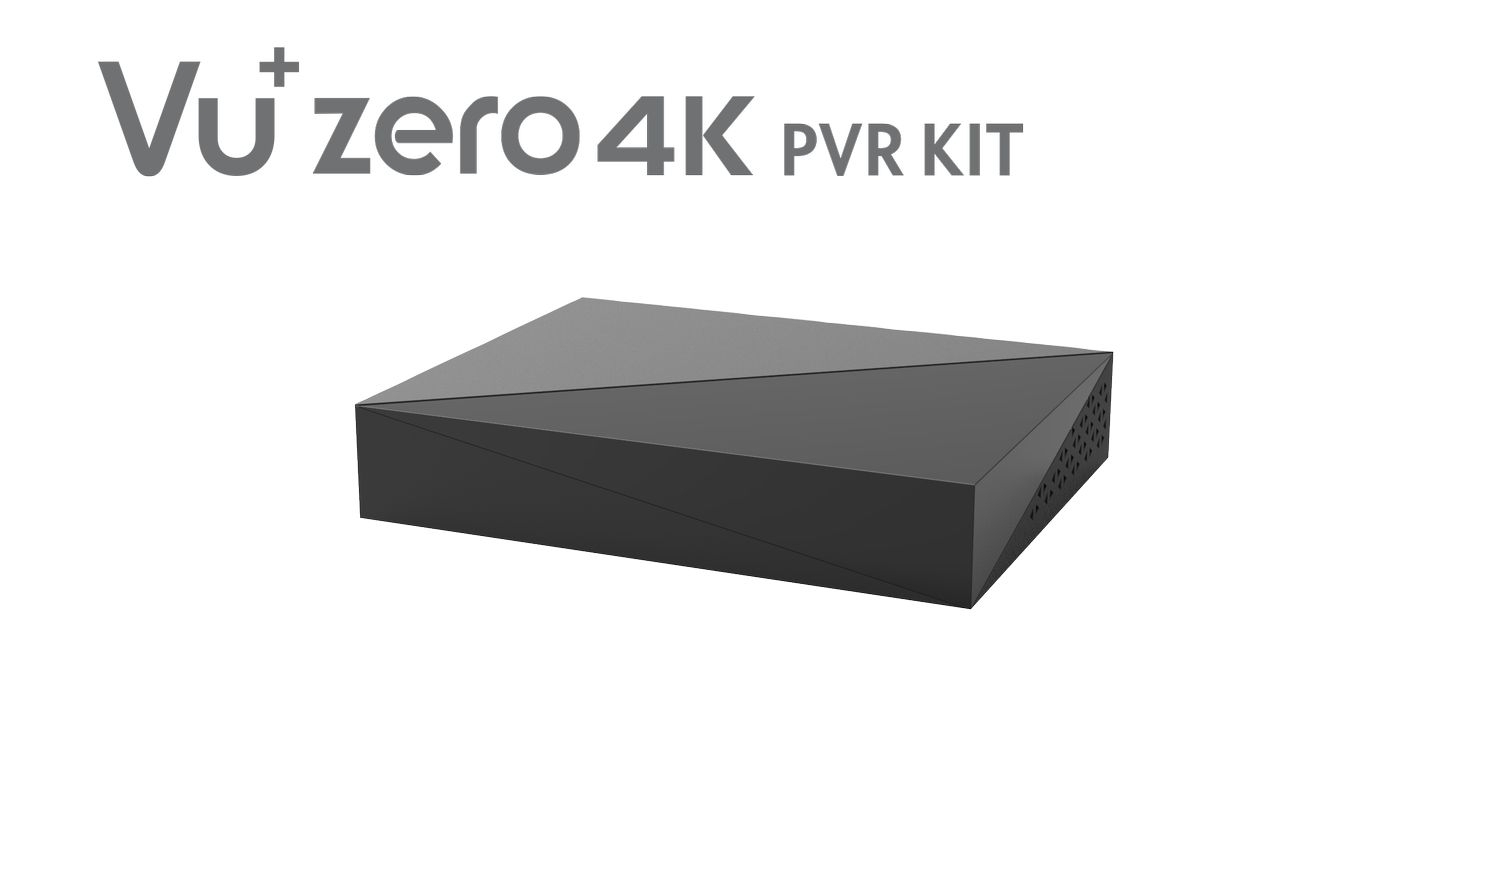 VU+Zero 4K PVR Kit incl. 4TB HDD